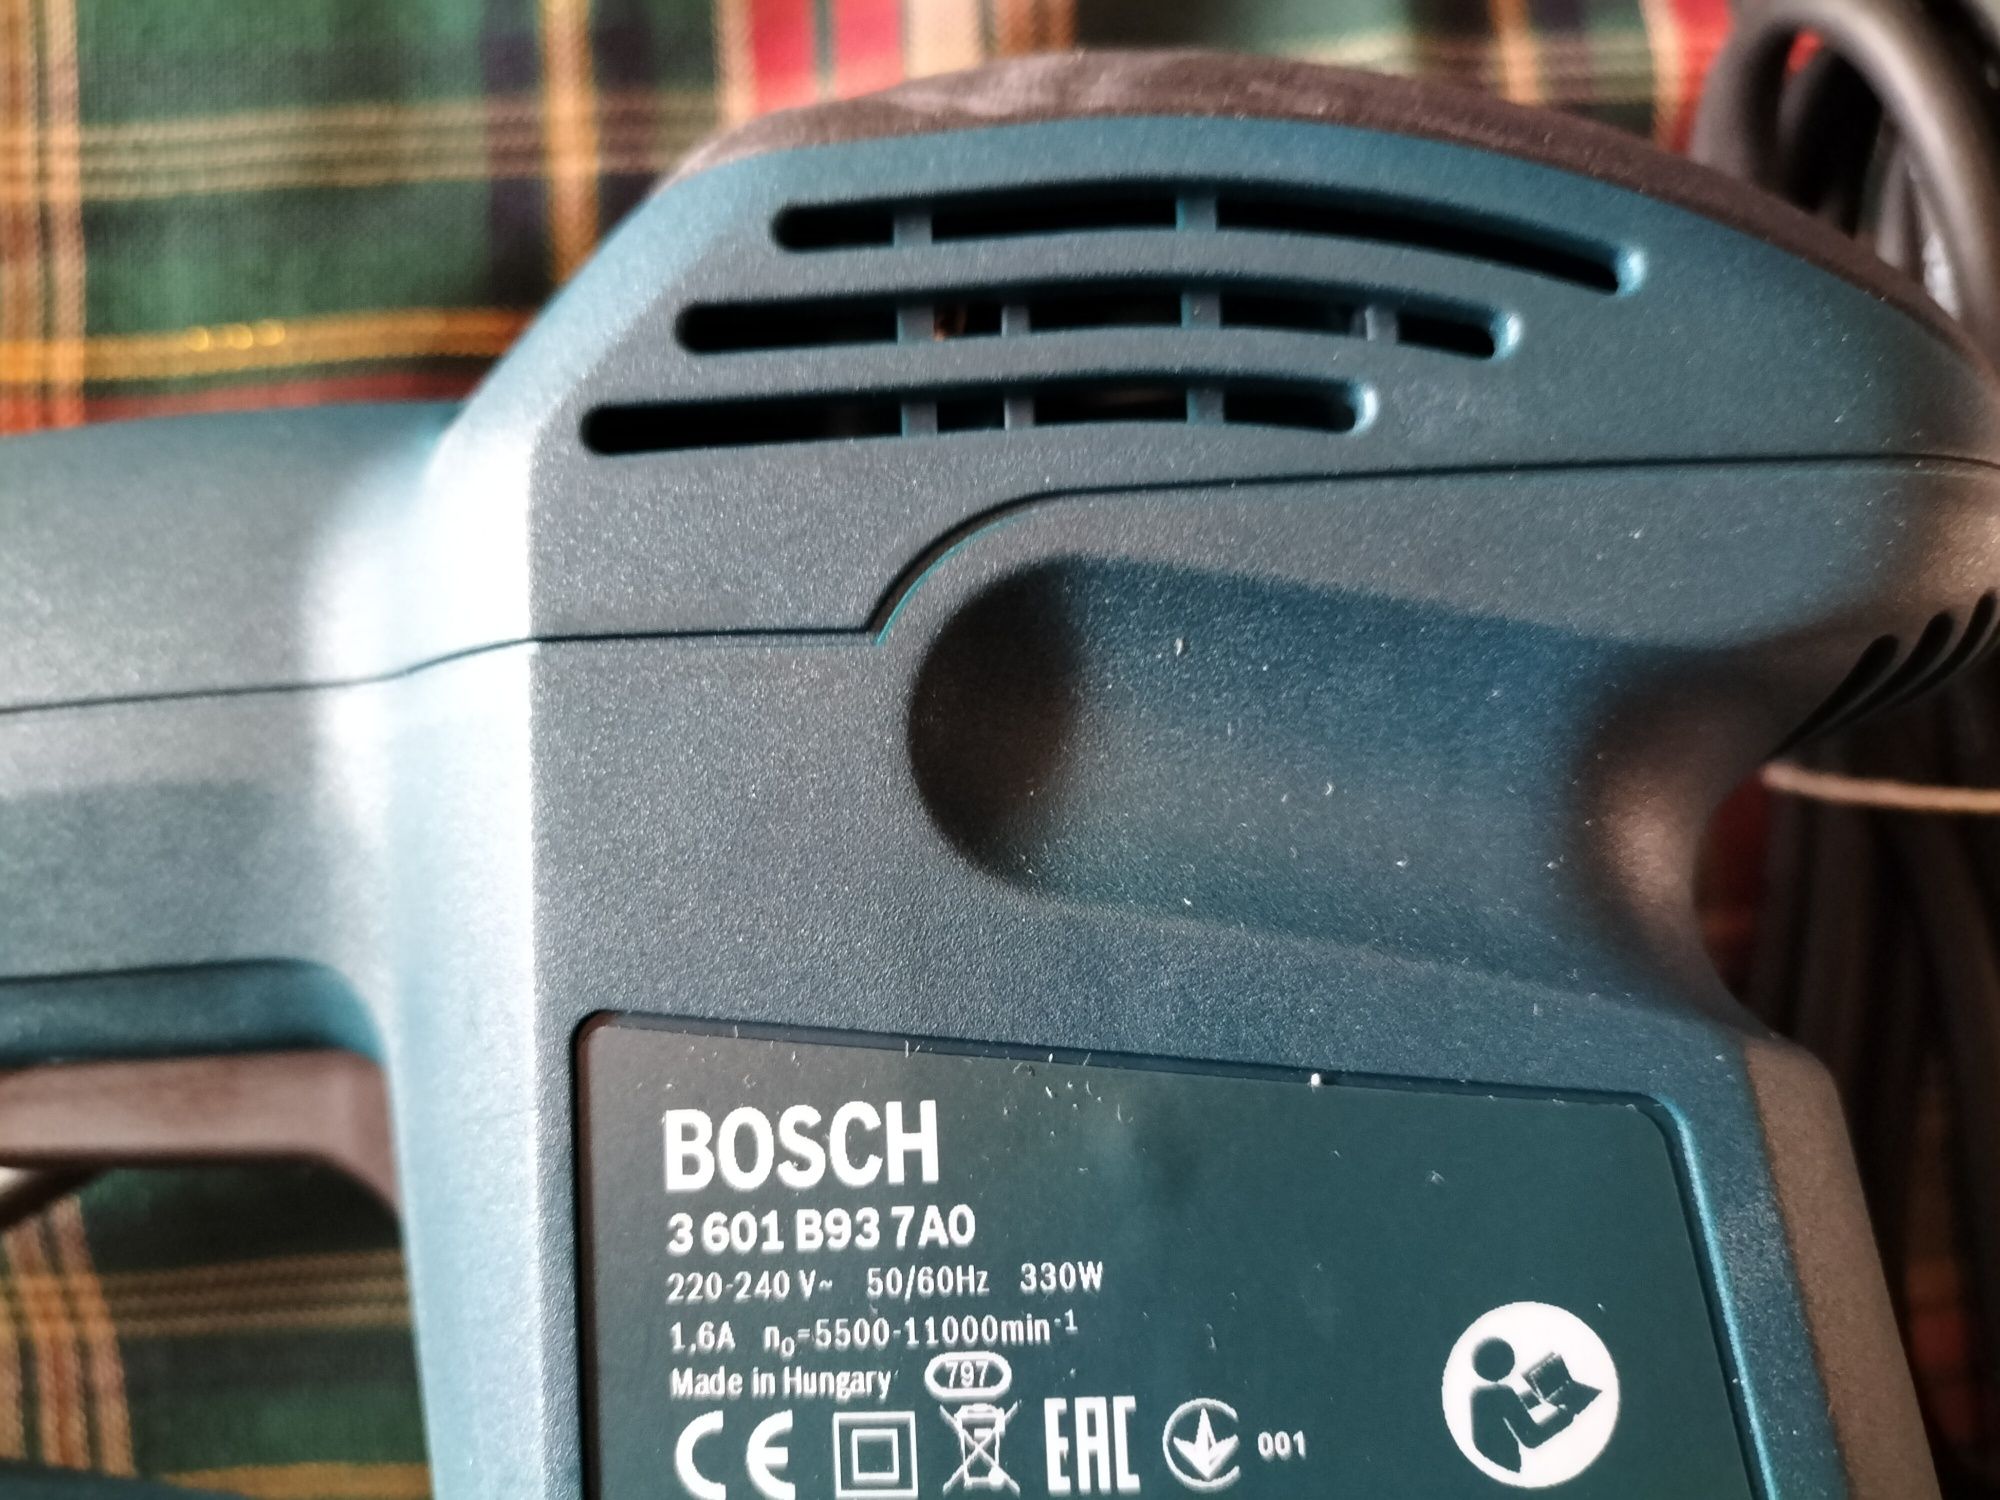 Bosch szlifierka gss 280 ae